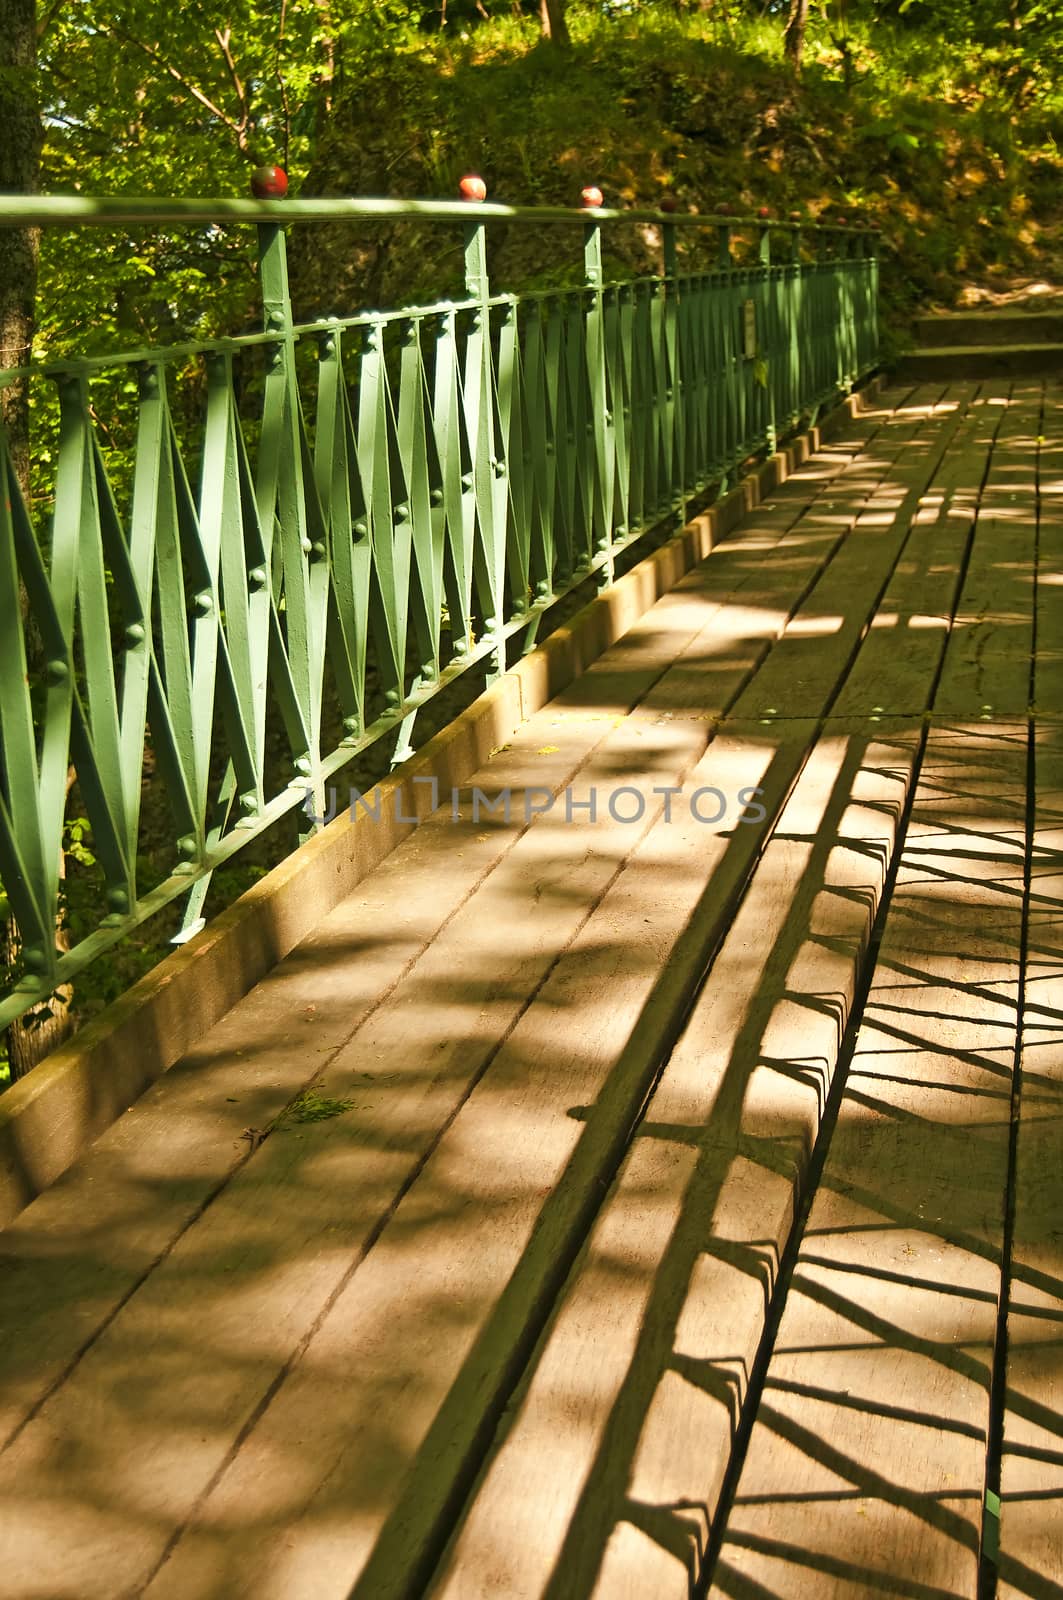 footbridge by Jochen